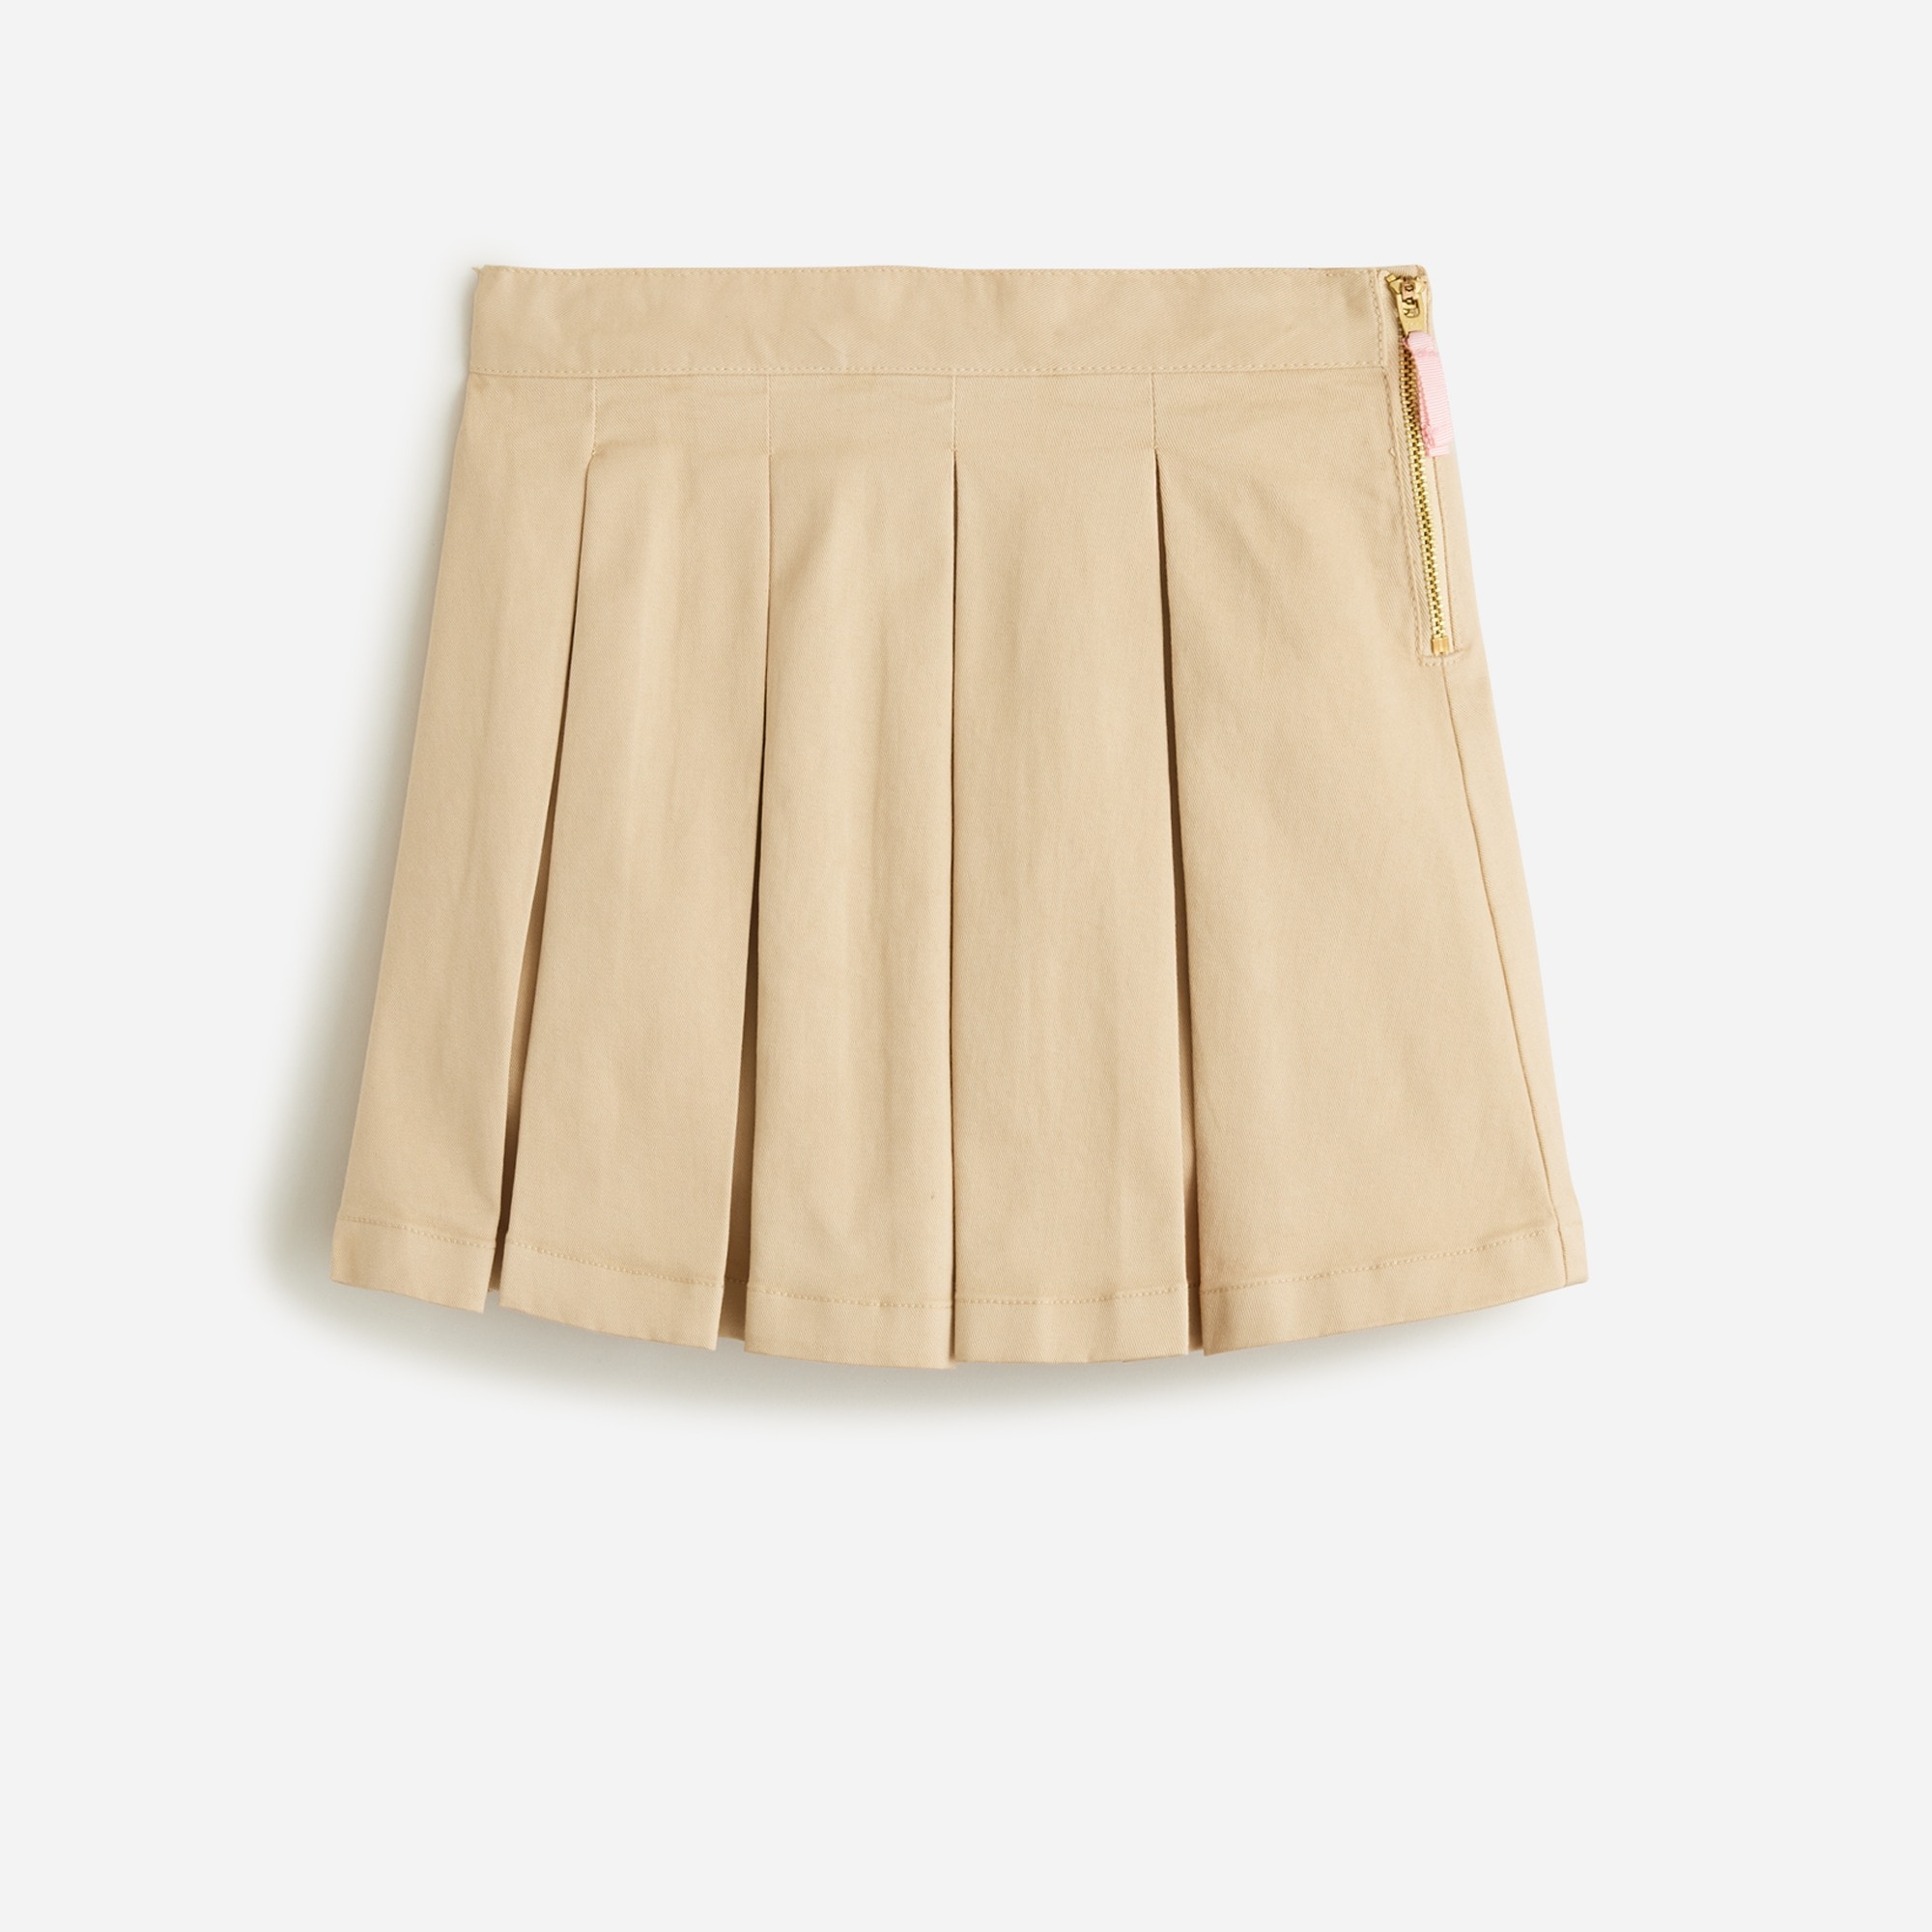  Girls' pleated chino skirt